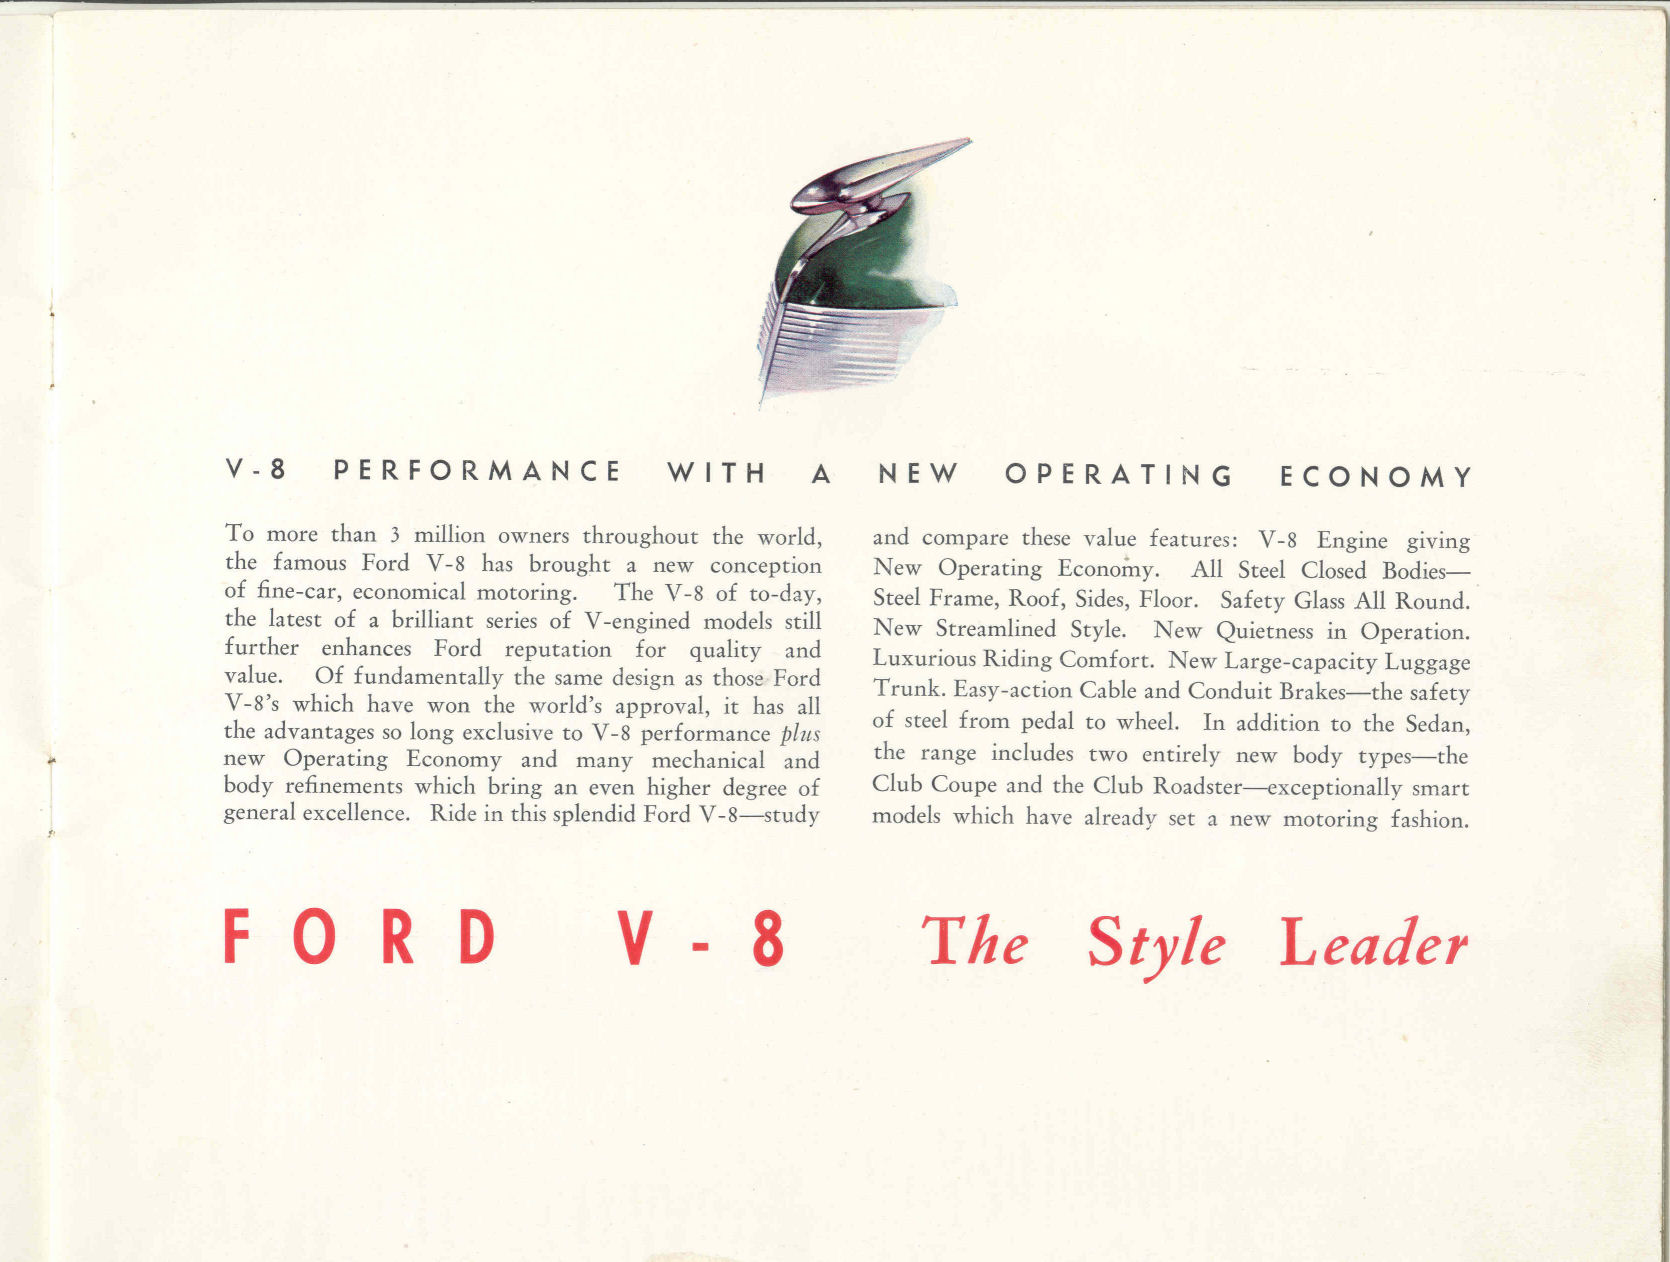 _1937_Ford_V8_Full_Line_Brochure_Rev-03